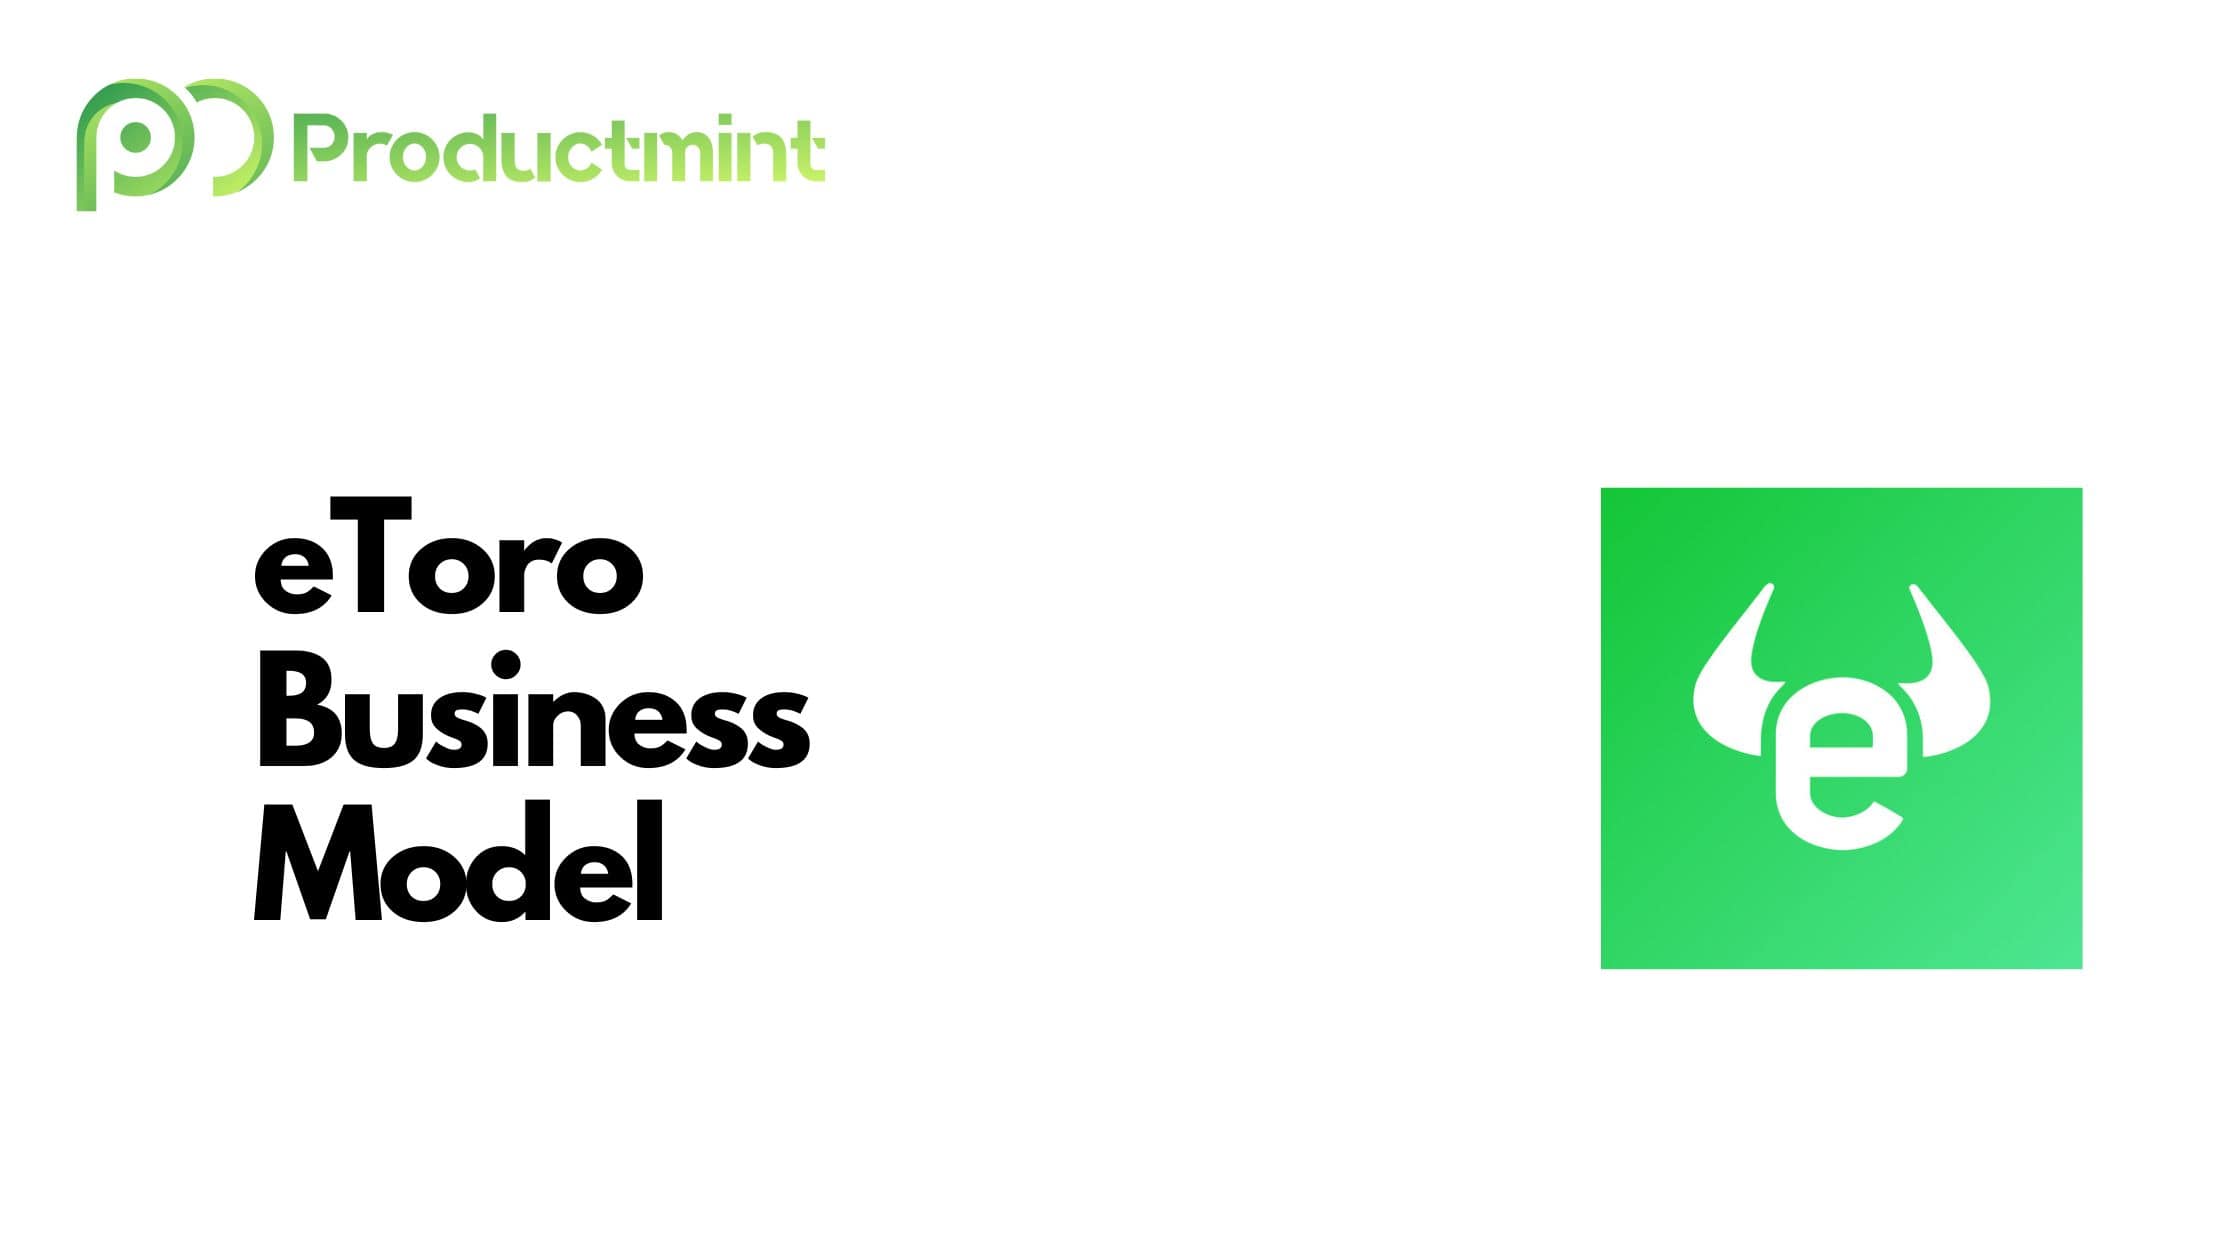 eToro Business Model